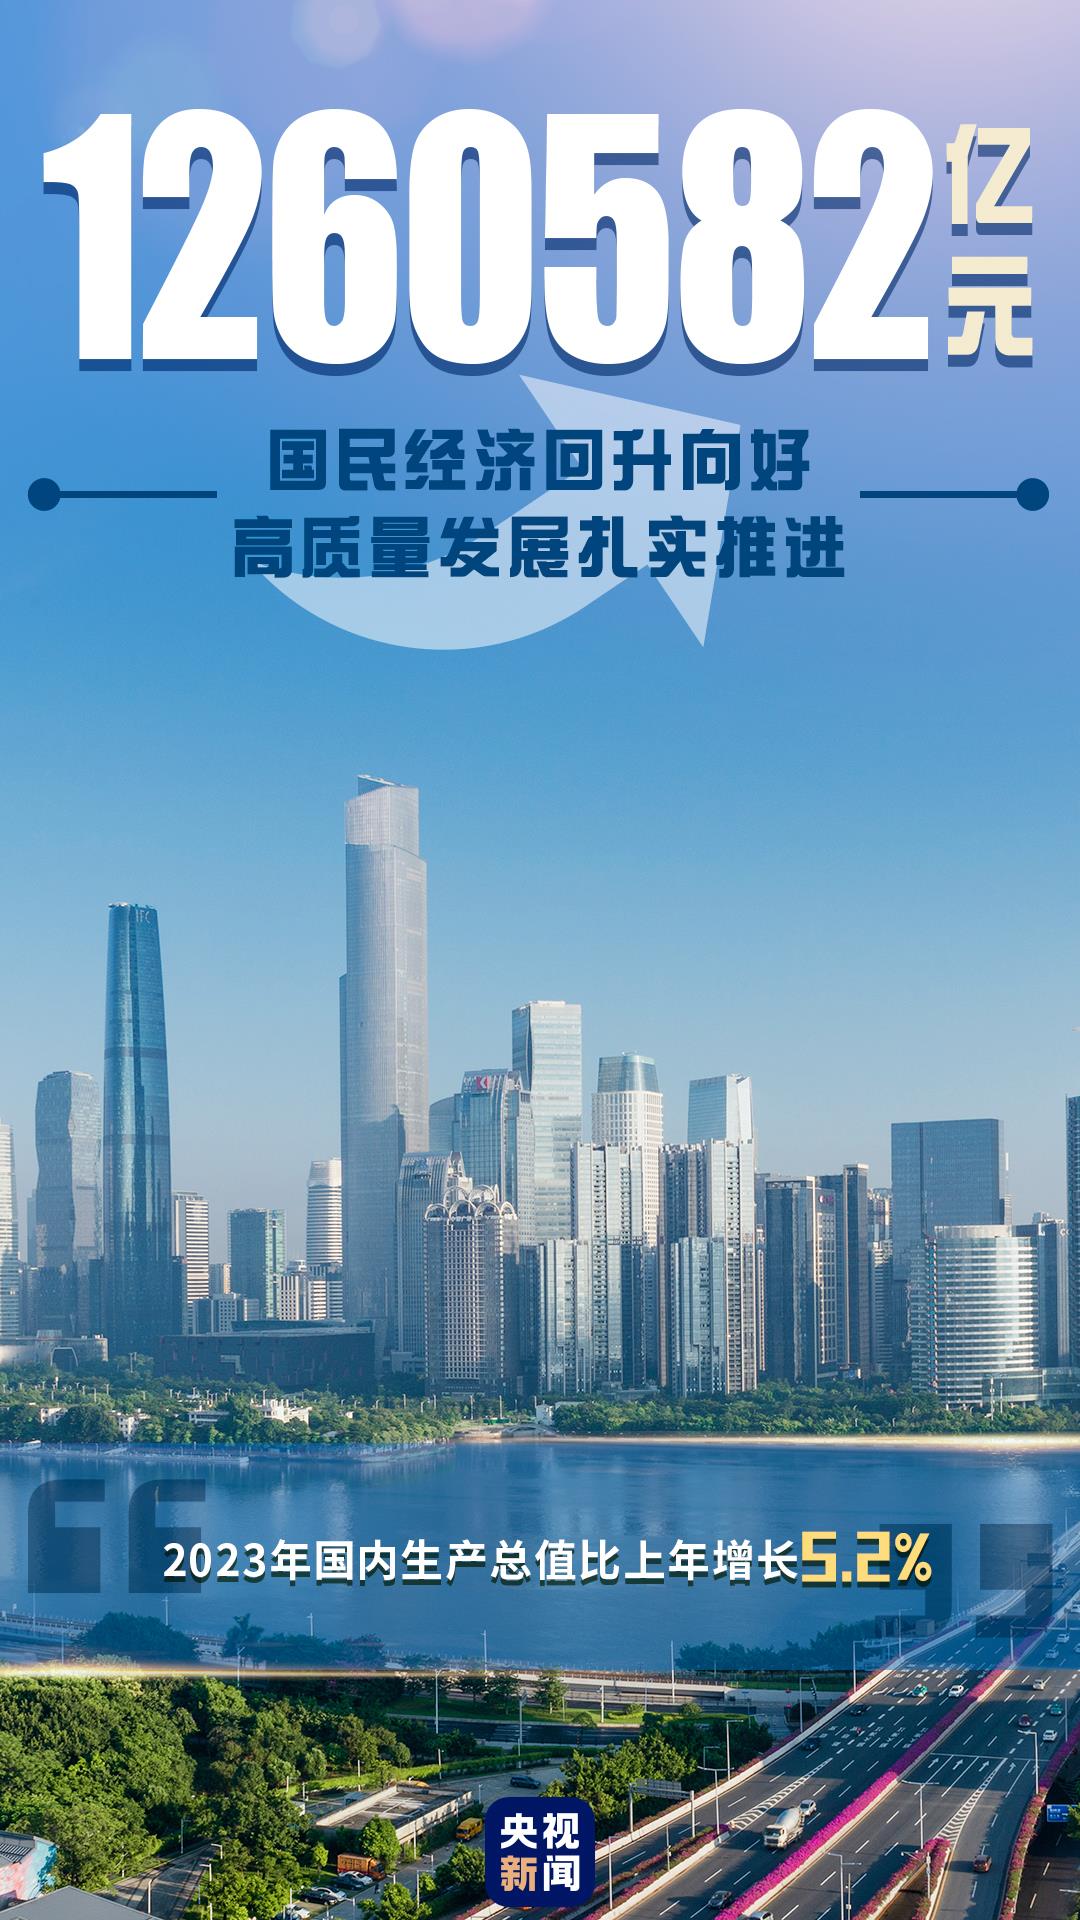 ↑5.2%！一组图速览2023年中国经济运行亮点